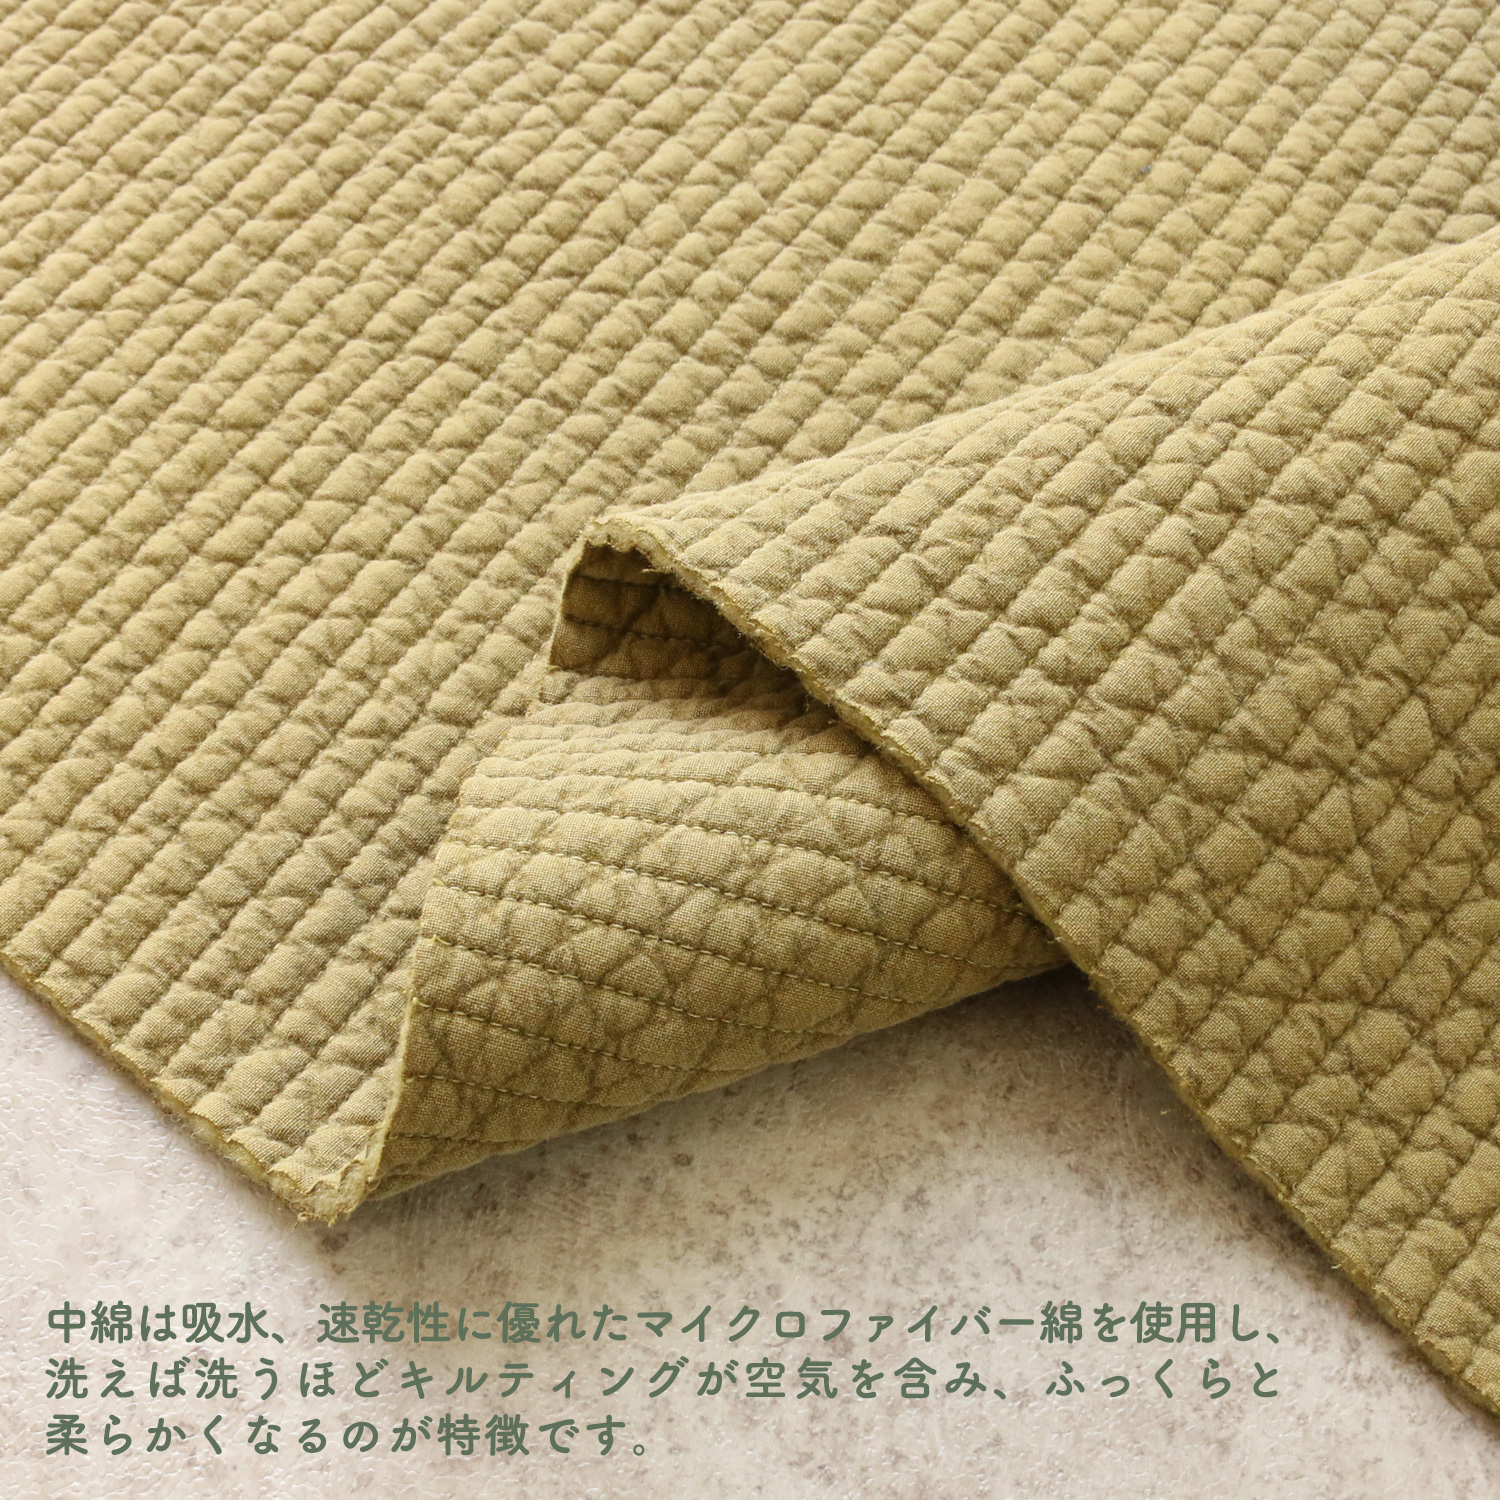 ■NBY307R nubi ヌビ 韓国伝統キルティング生地 巾7mmサイズ 約8m巻 (巻) 2